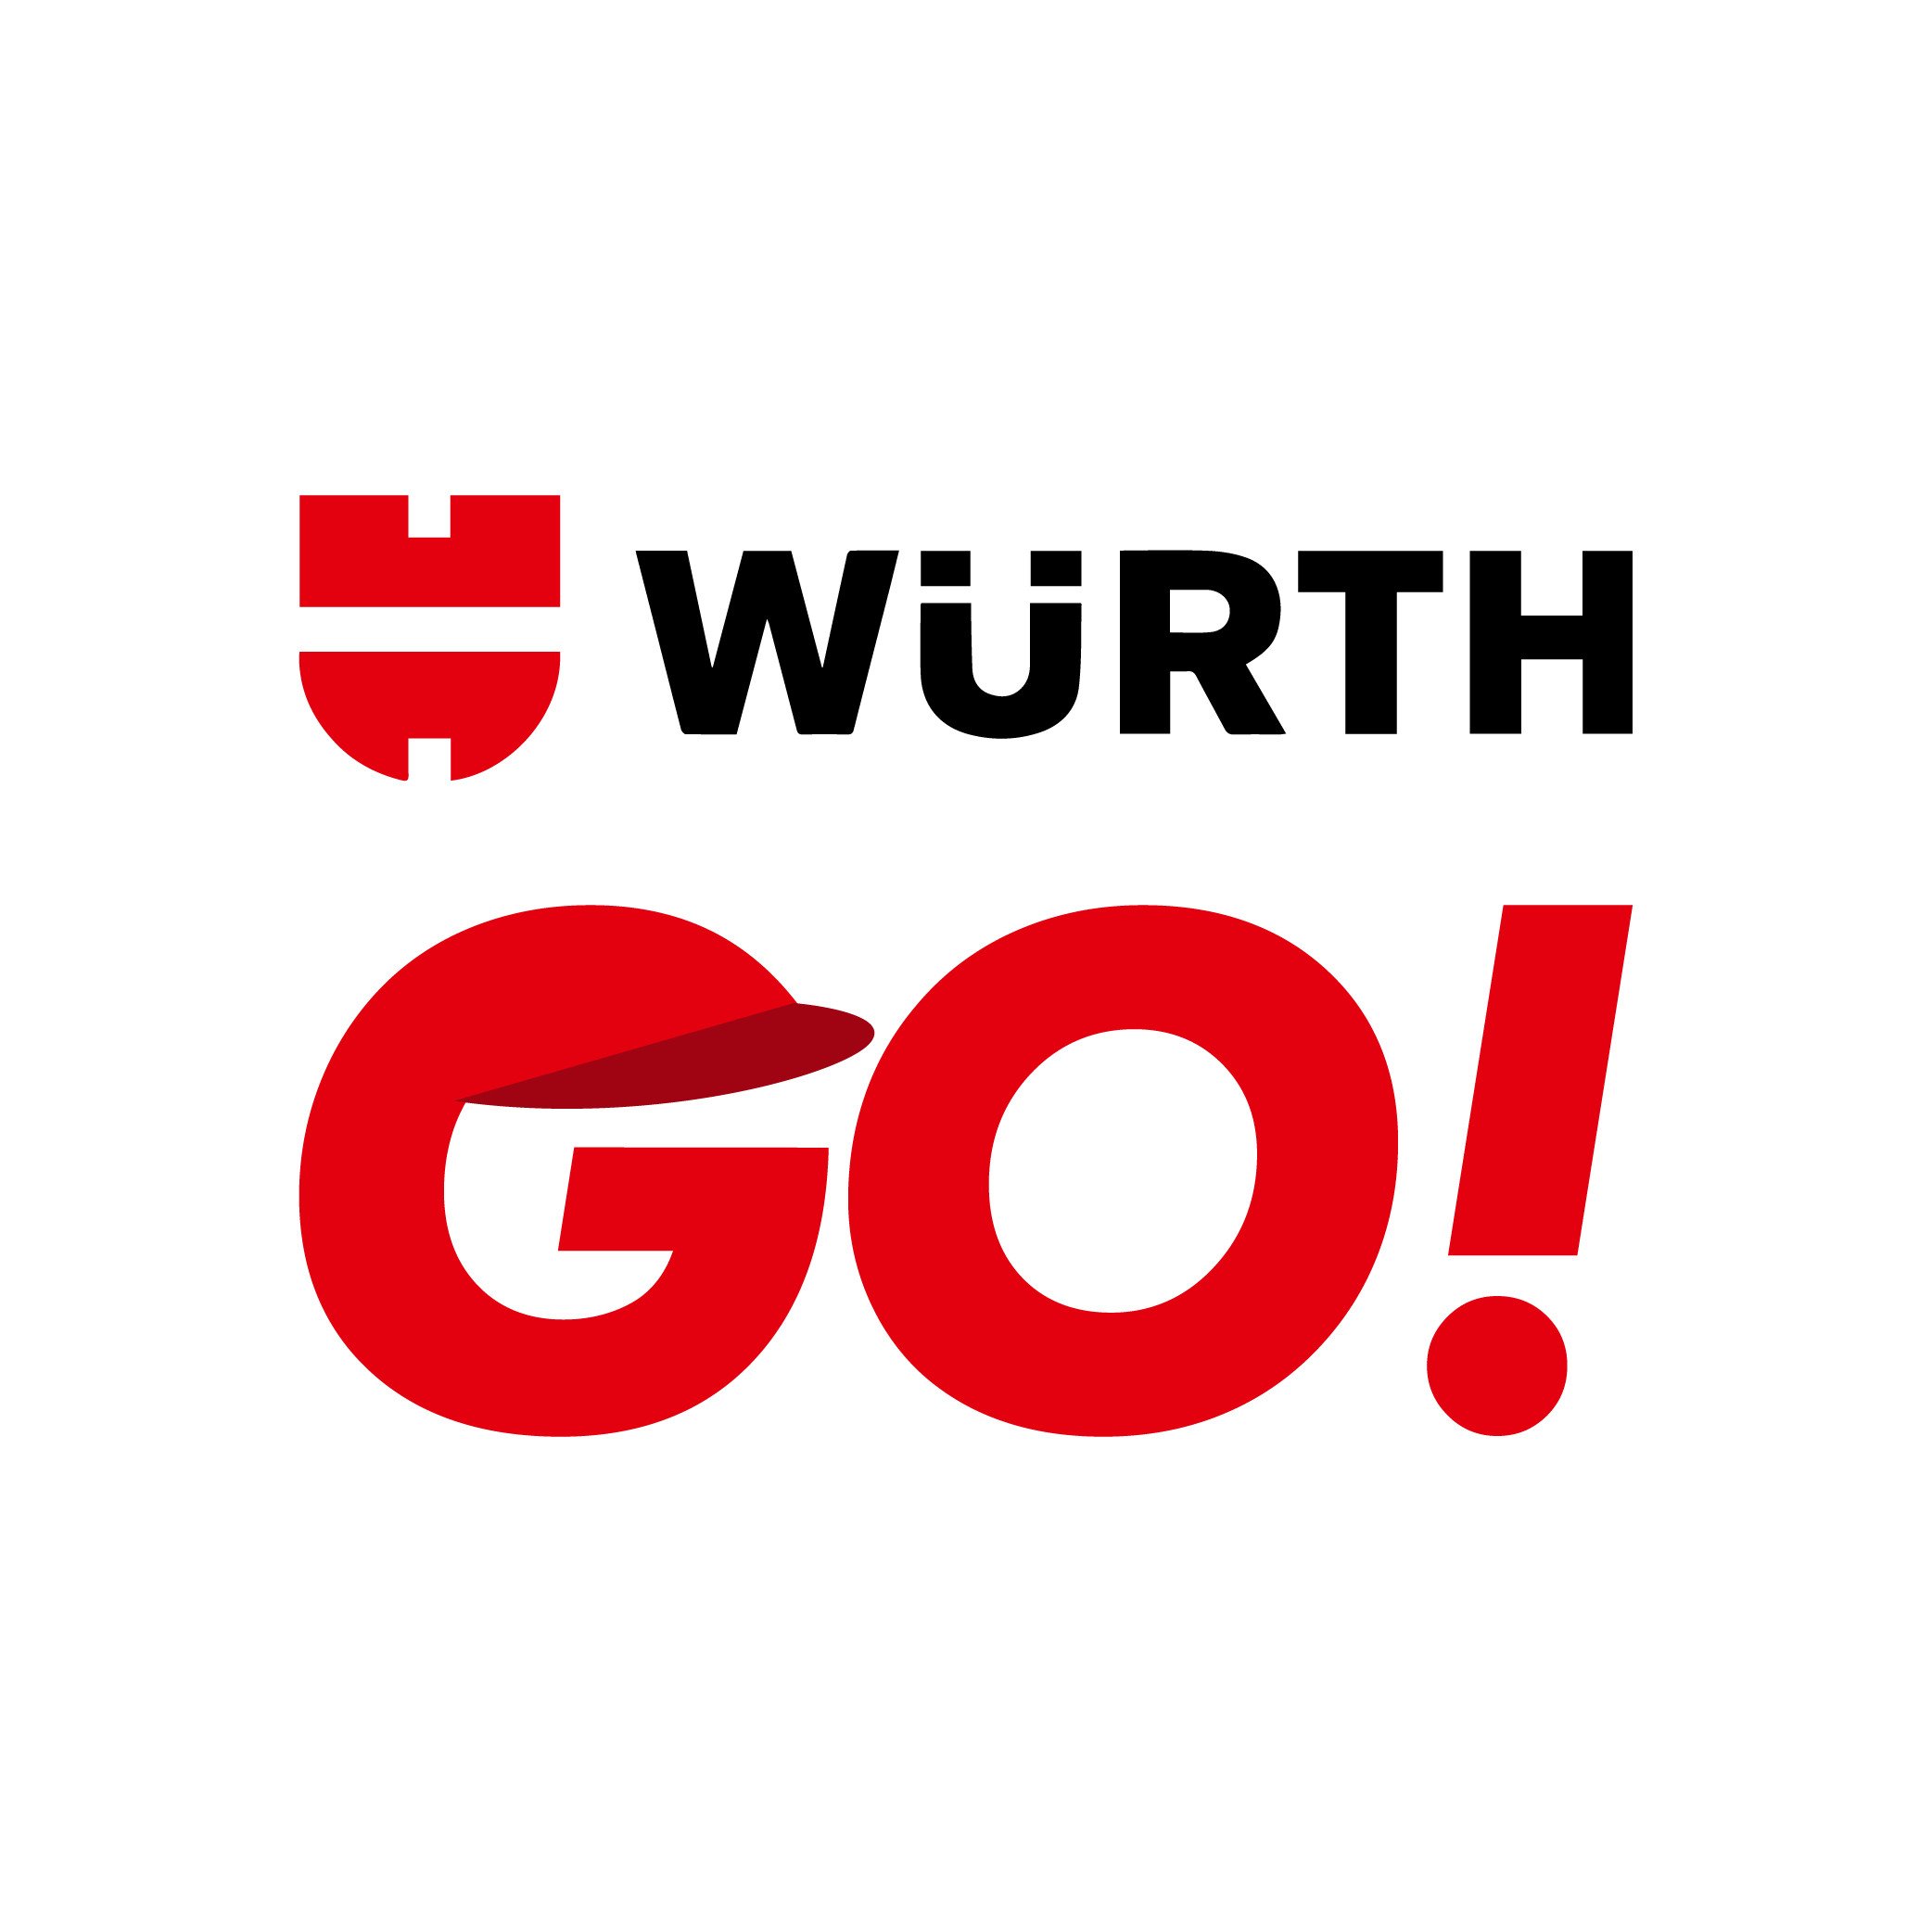 Wurth Go